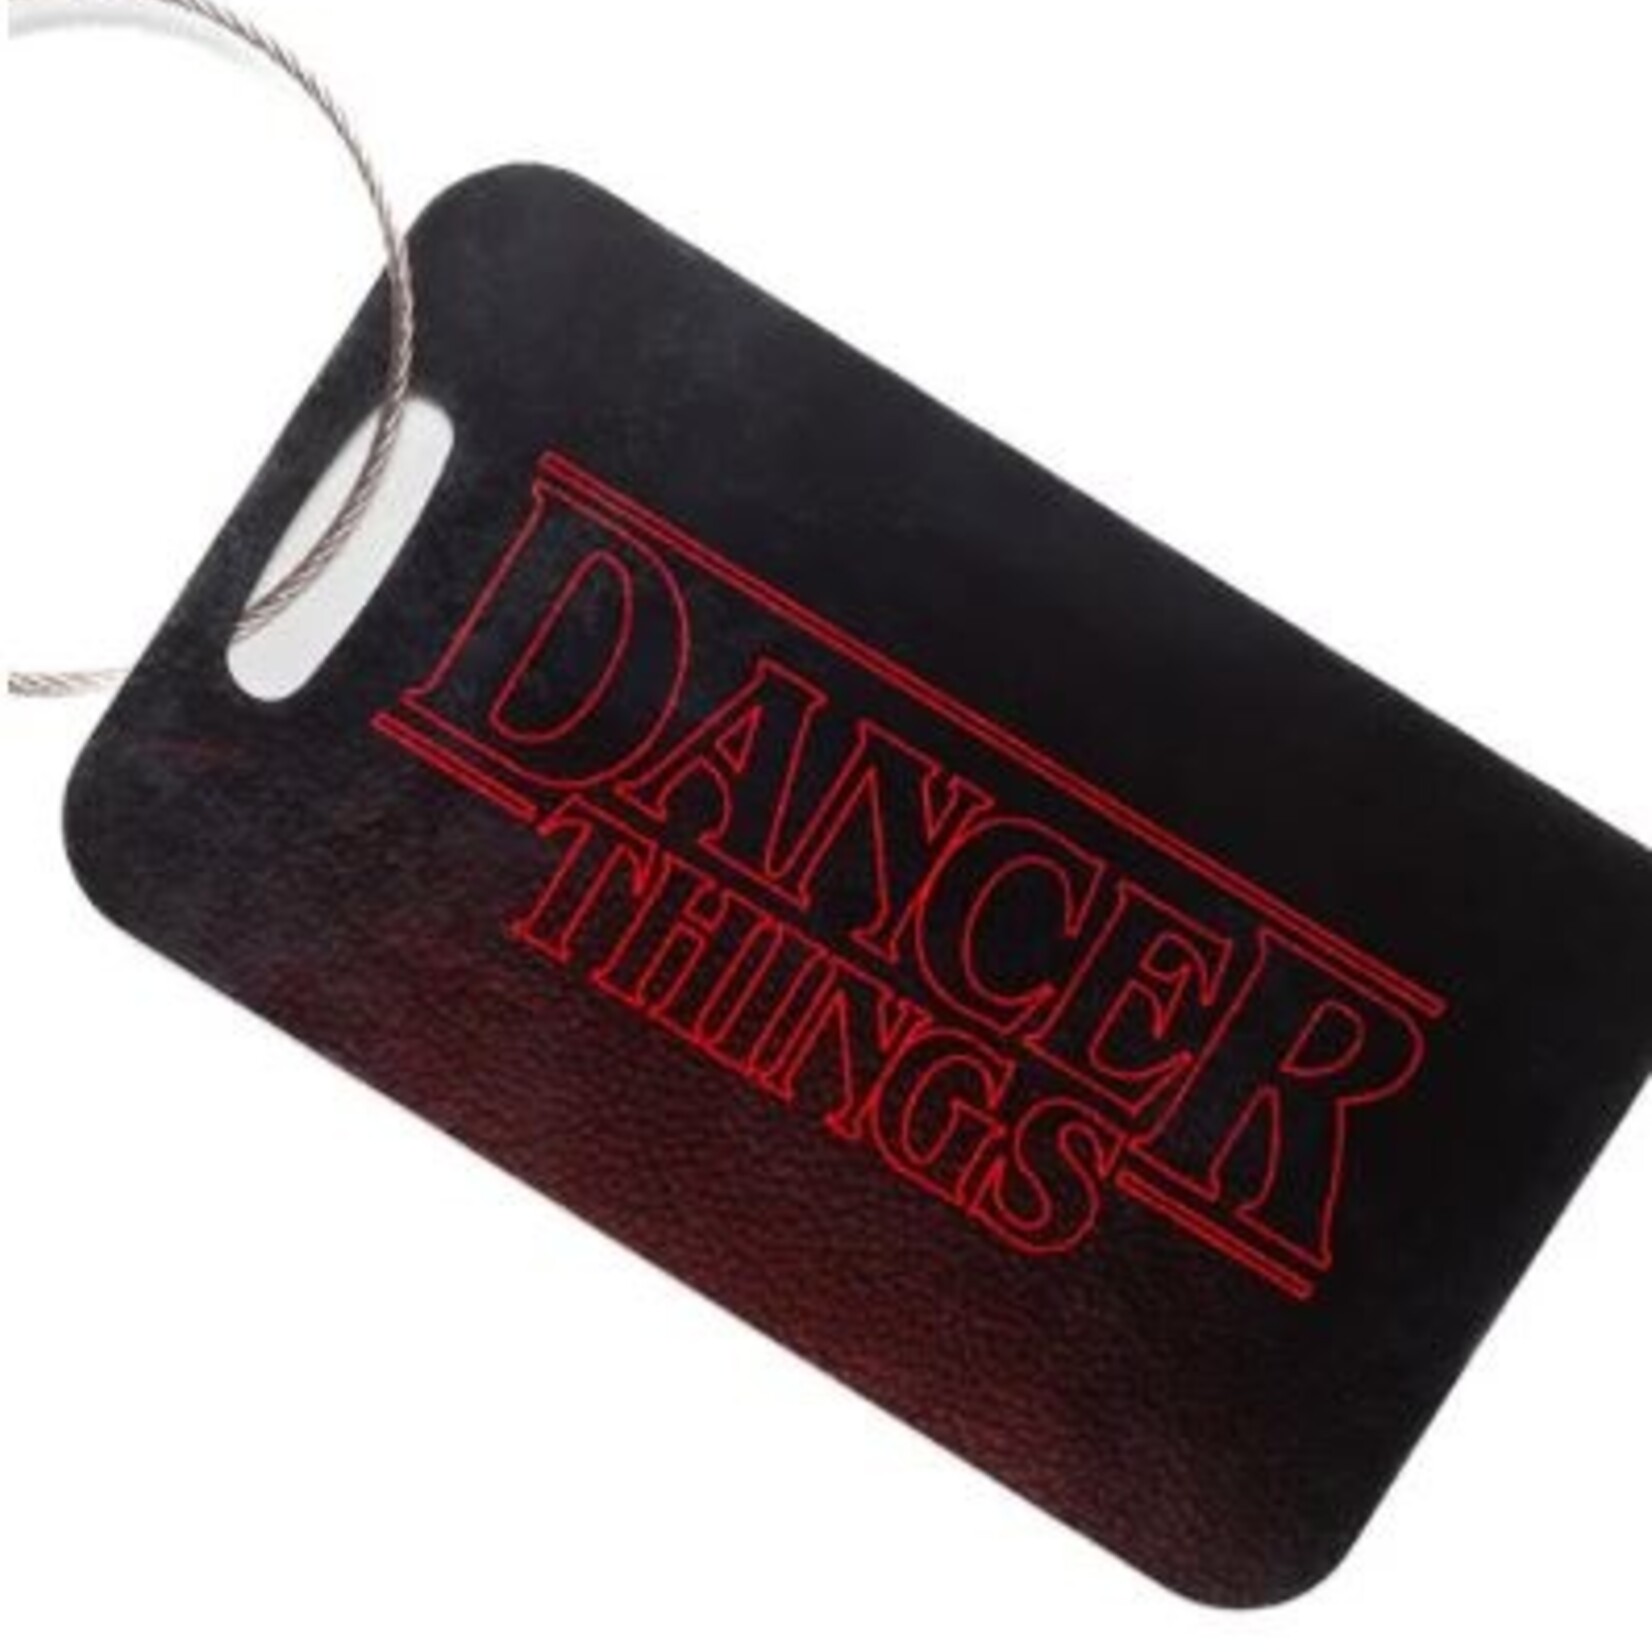 Covet Dance Covet Dance Dancer Things Bag Tag